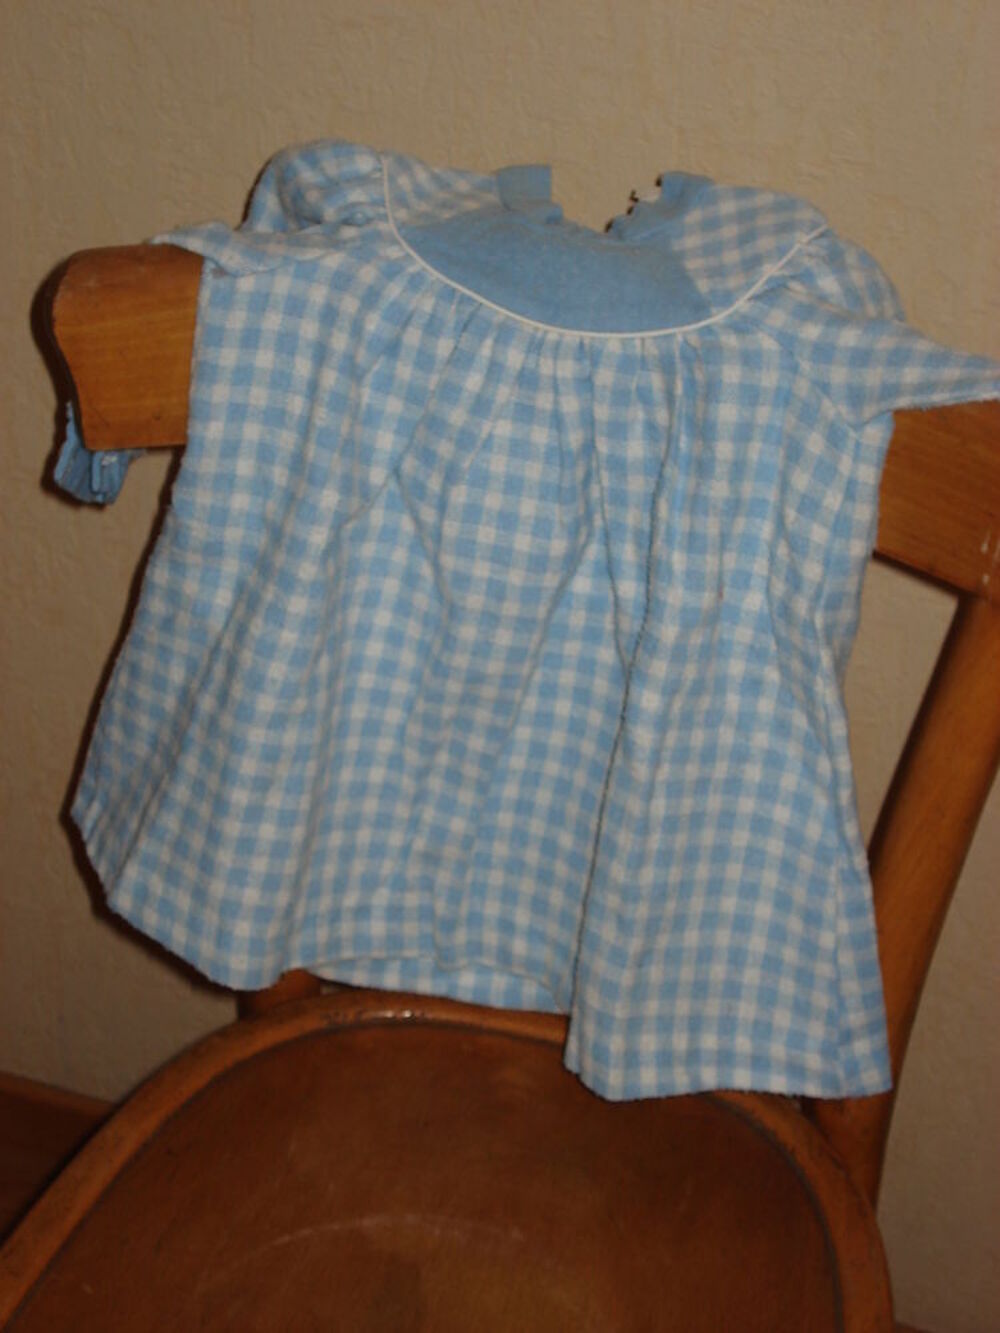 robe b&eacute;b&eacute; file 1 an motifs carreaux bleus et blancs
Vtements enfants